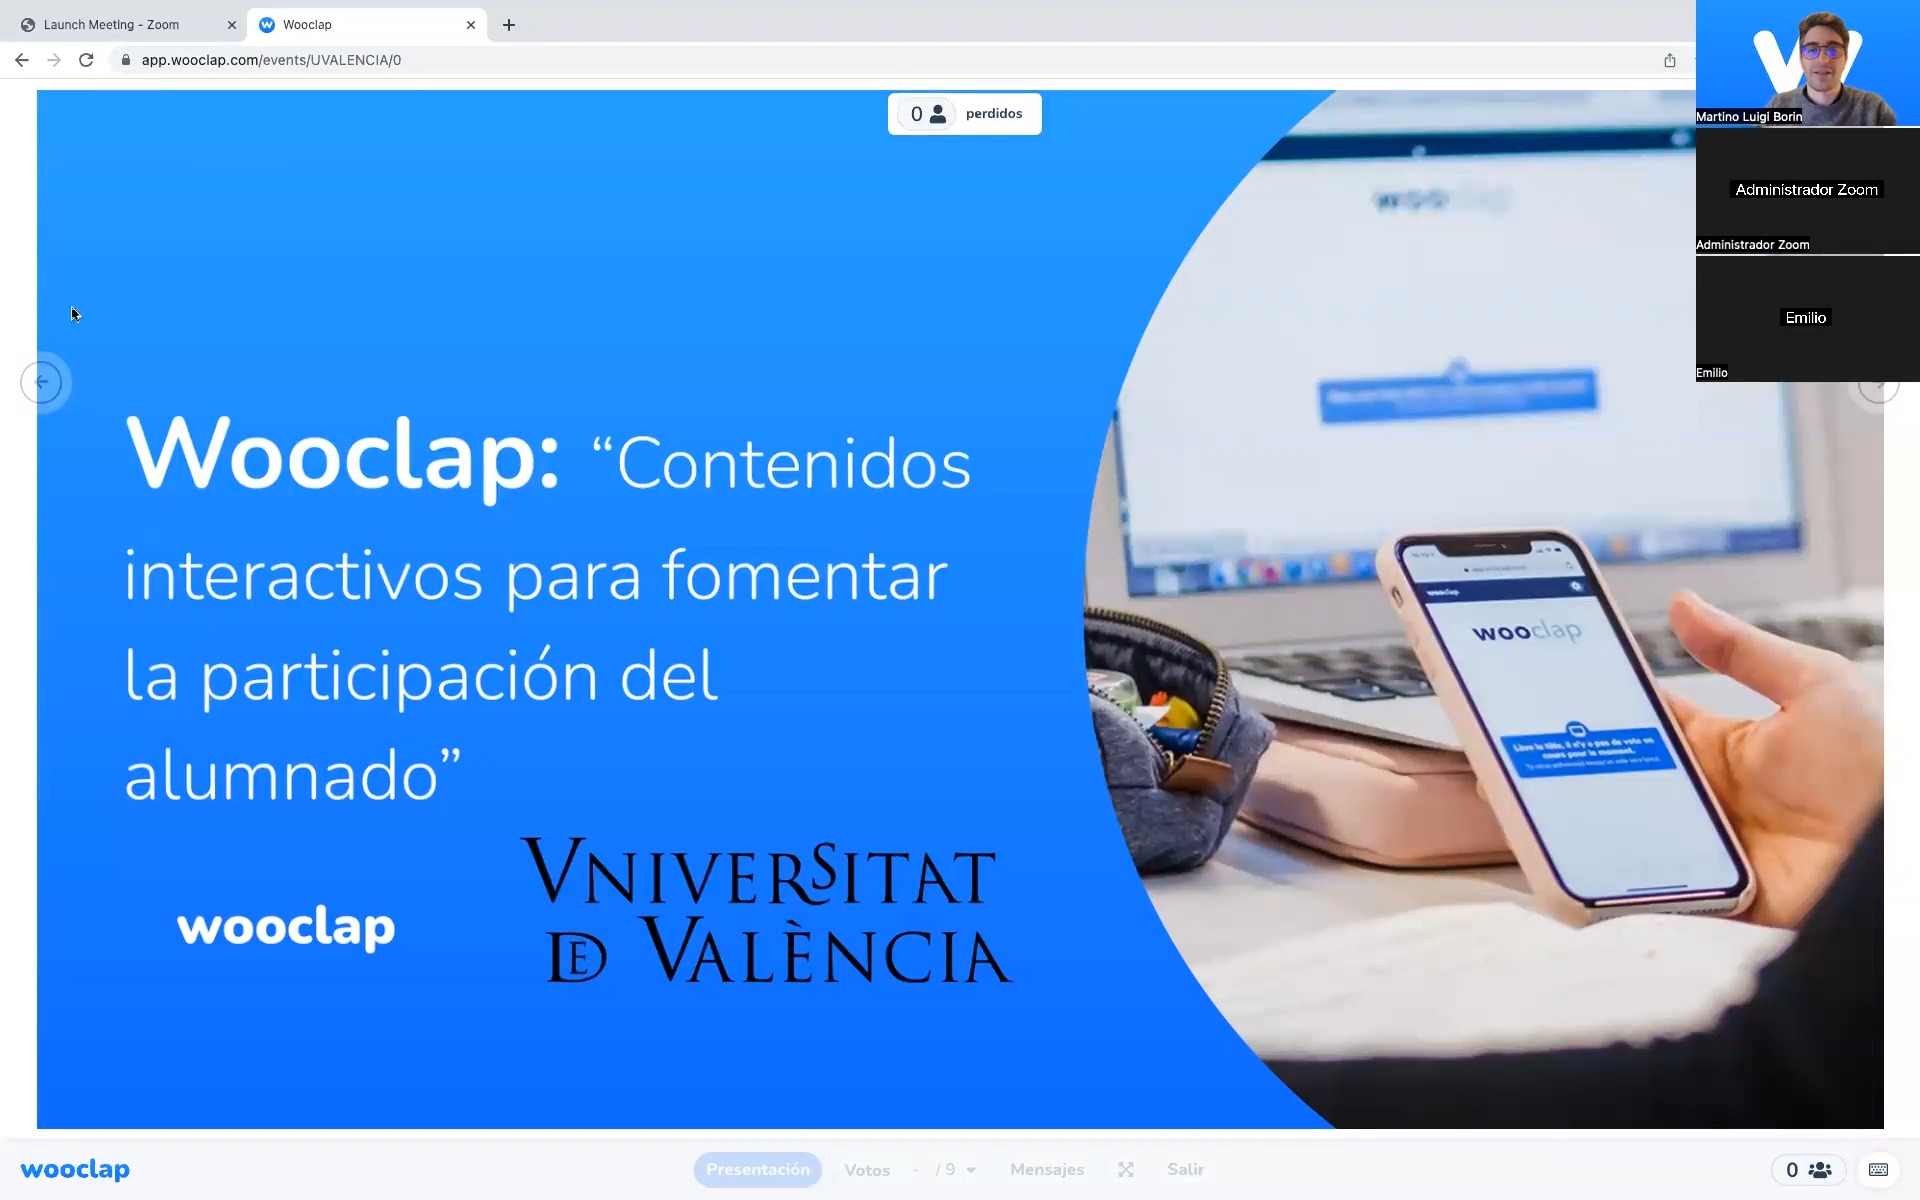 Wooclap: Contenidos interactivos para fomentar la participación del alumnado.